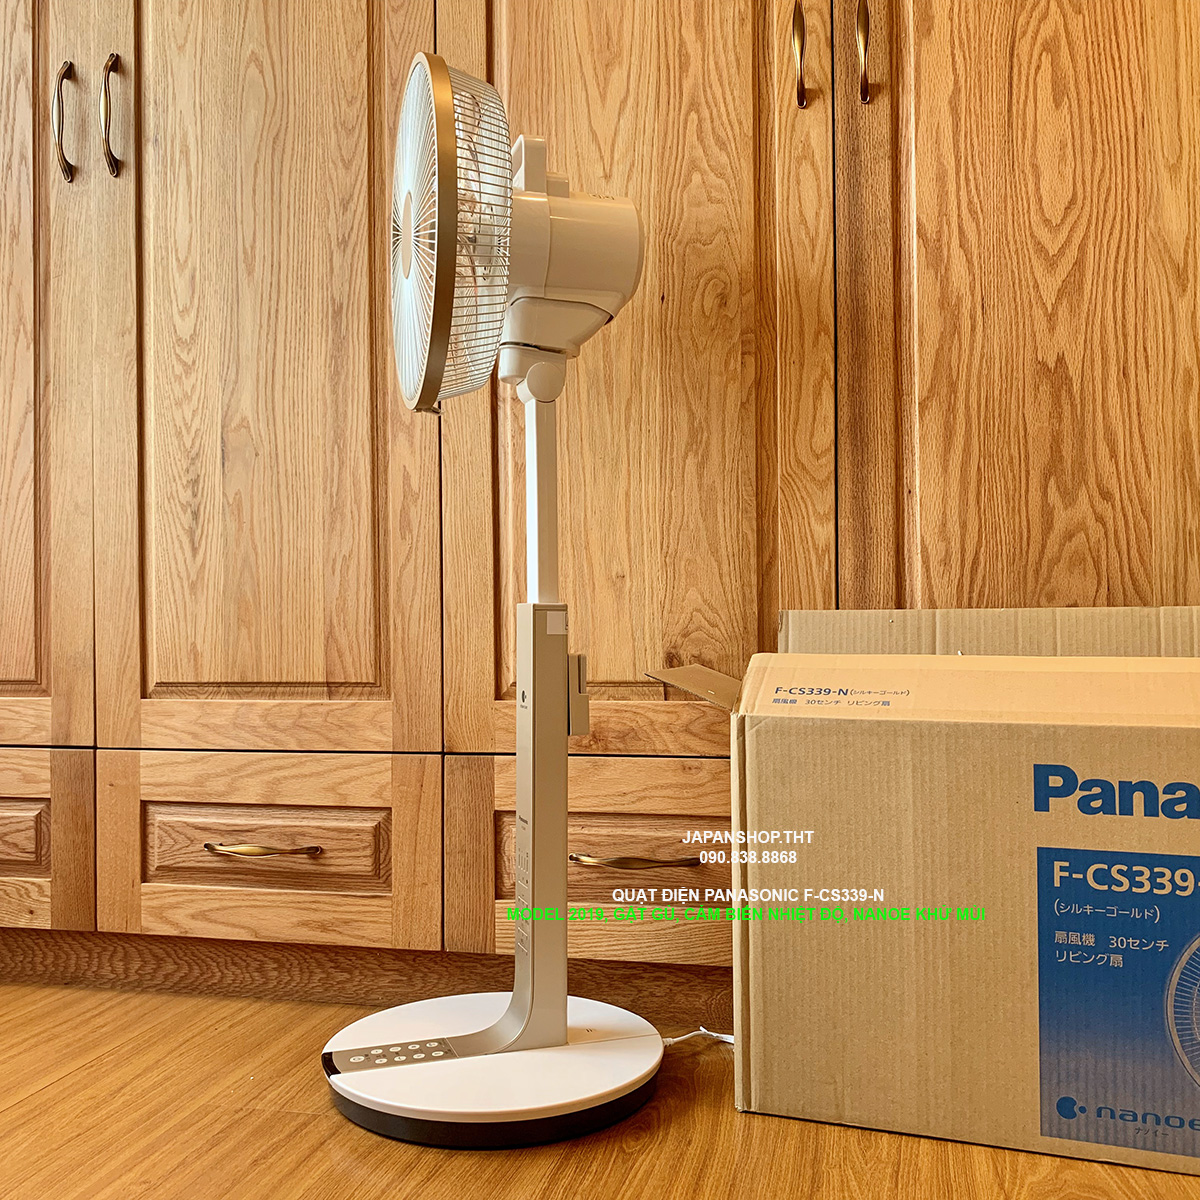 Quạt điện Panasonic F-CS339-N cảm biến độ ẩm và nhiệt độ, ION